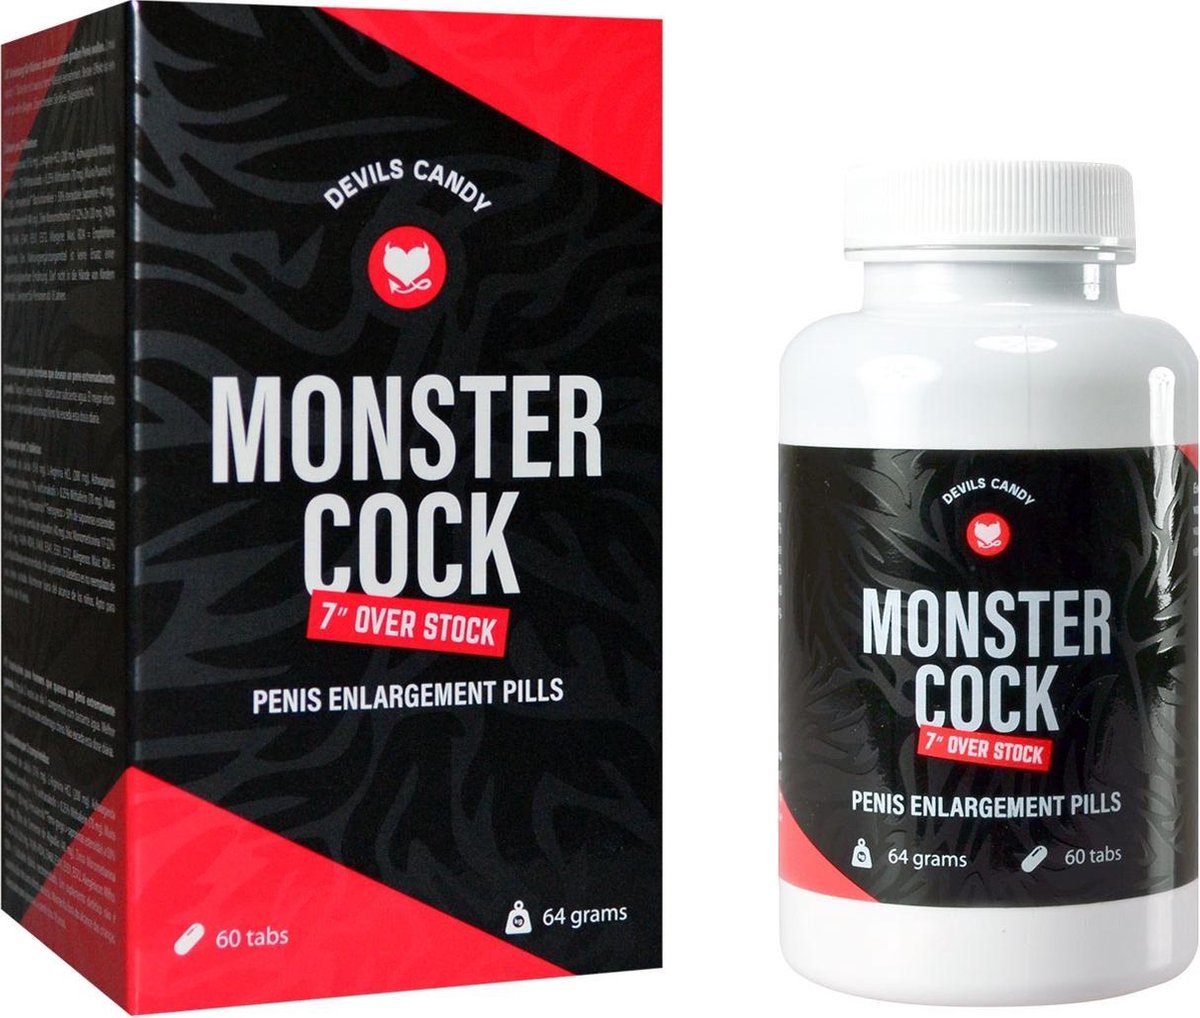 Morningstar Devils Candy Monster Cock Penis Enlargement